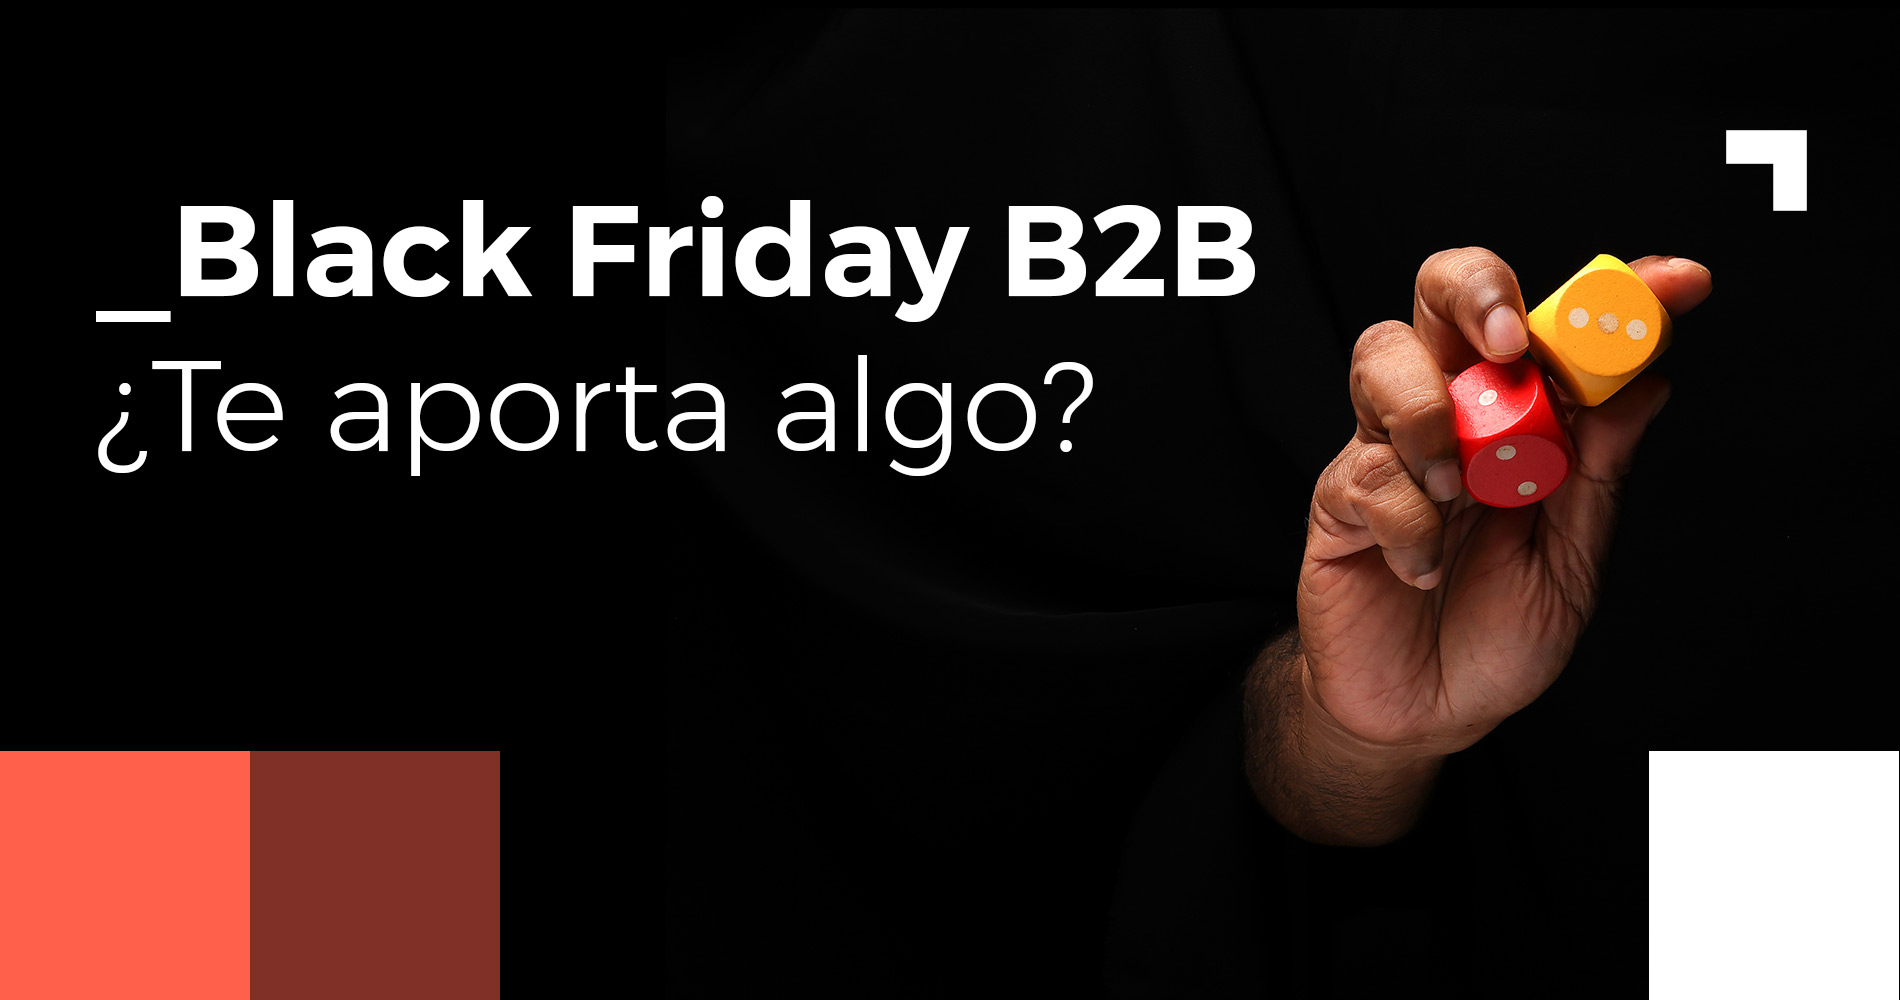 Black Friday B2B - Pros y contras